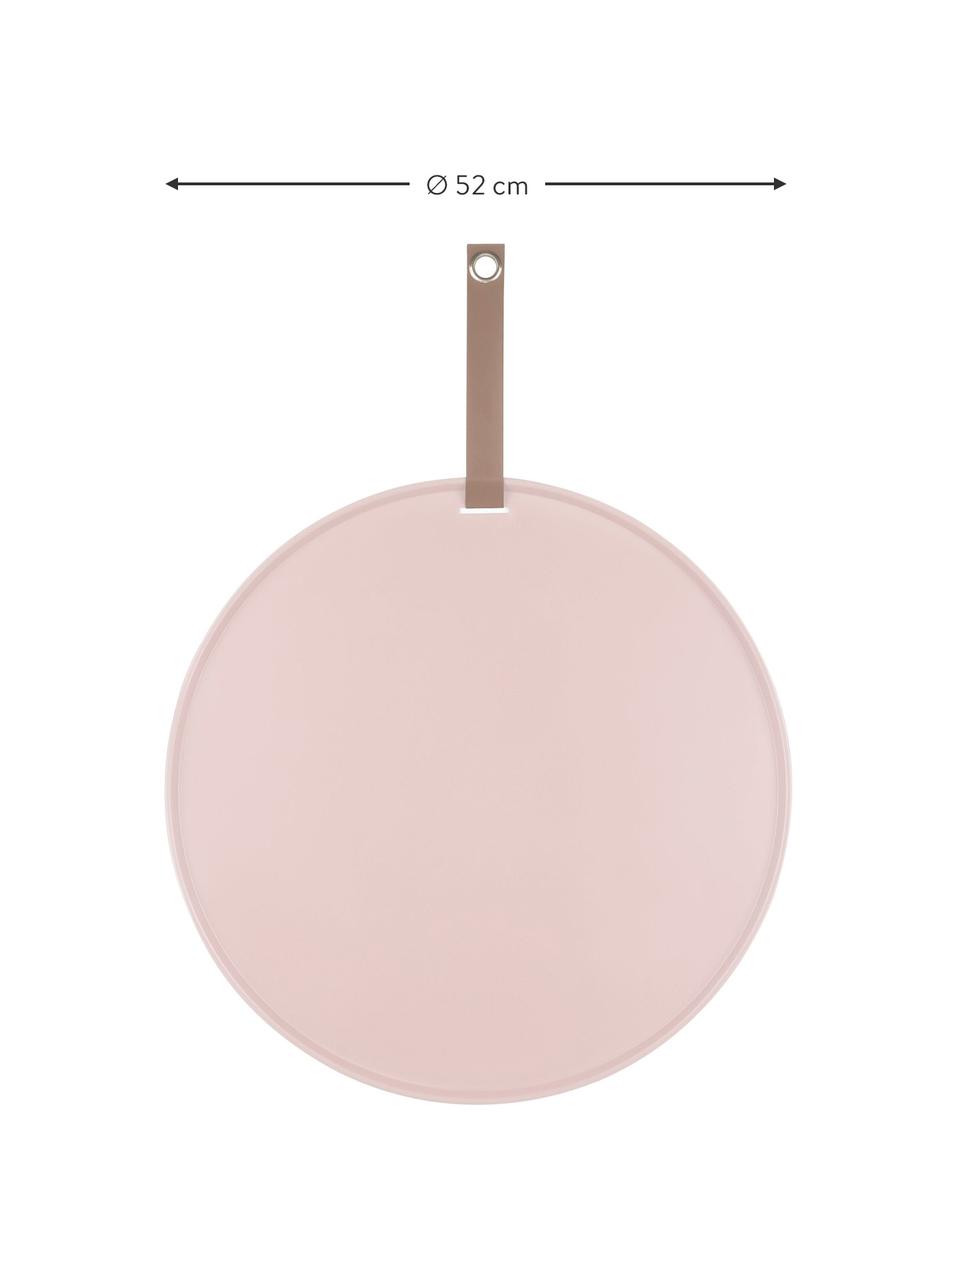 Tableau d'affichage magnétique rose pâle Perky, Polyuréthane, Blanc, Ø 52 cm